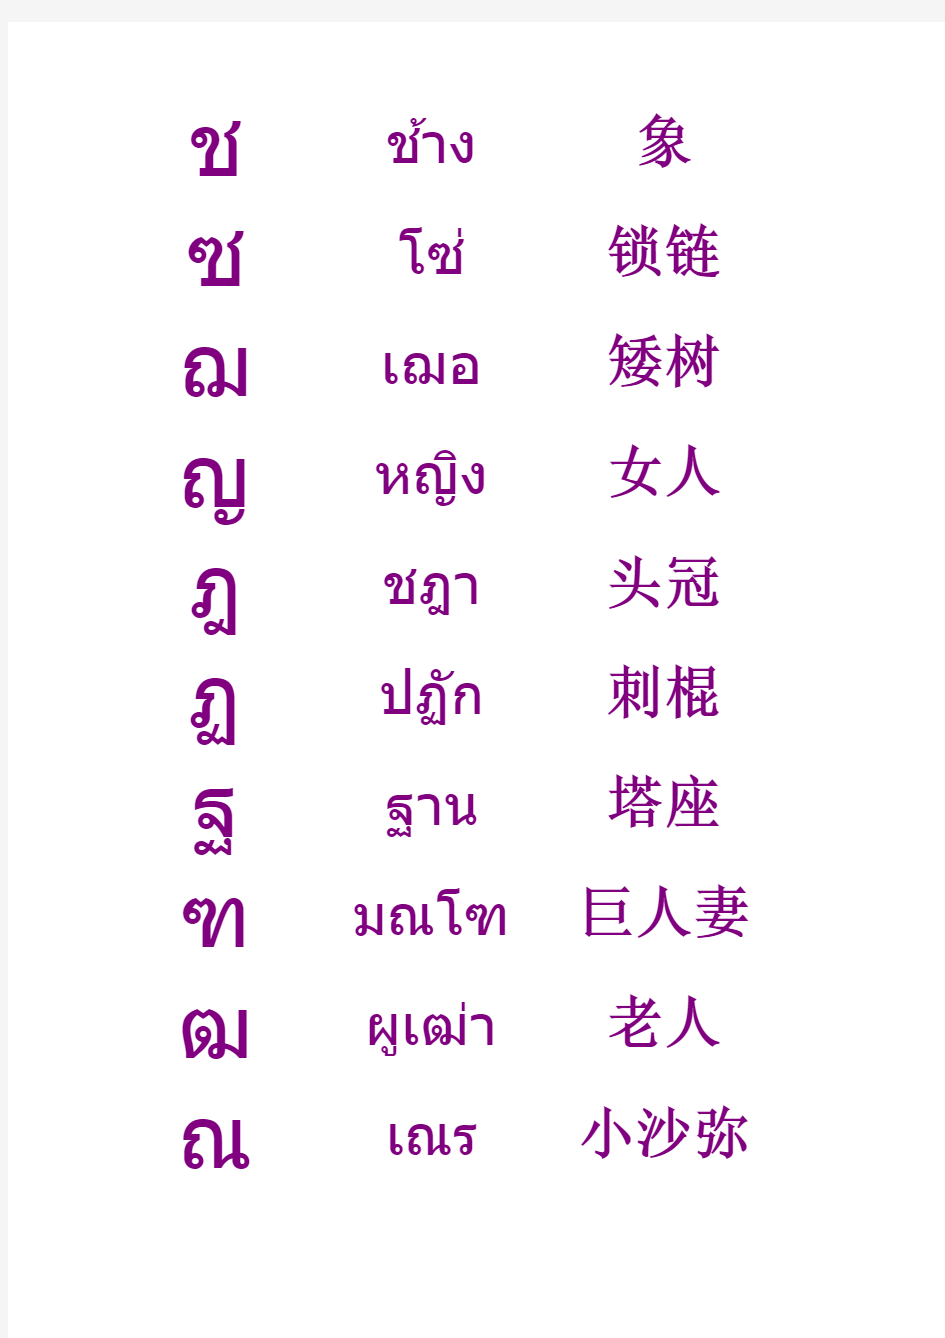 泰语辅音字母及名称表【音标+释义+官方发音链接】